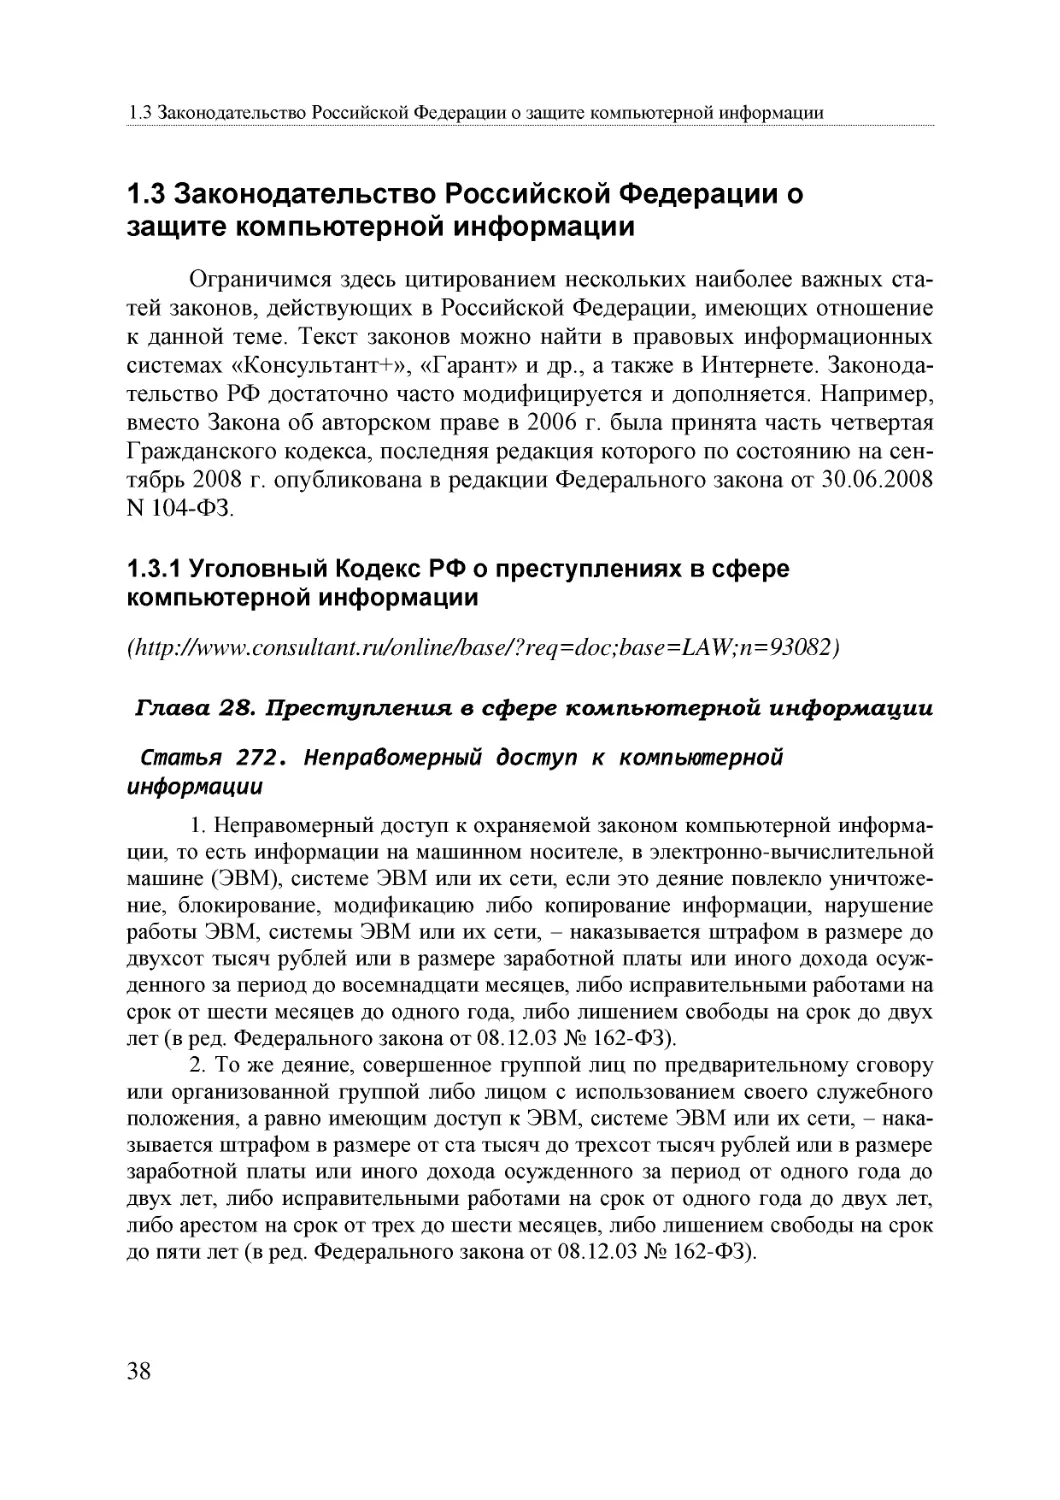 Informatika_Uchebnik_dlya_vuzov_2010 38